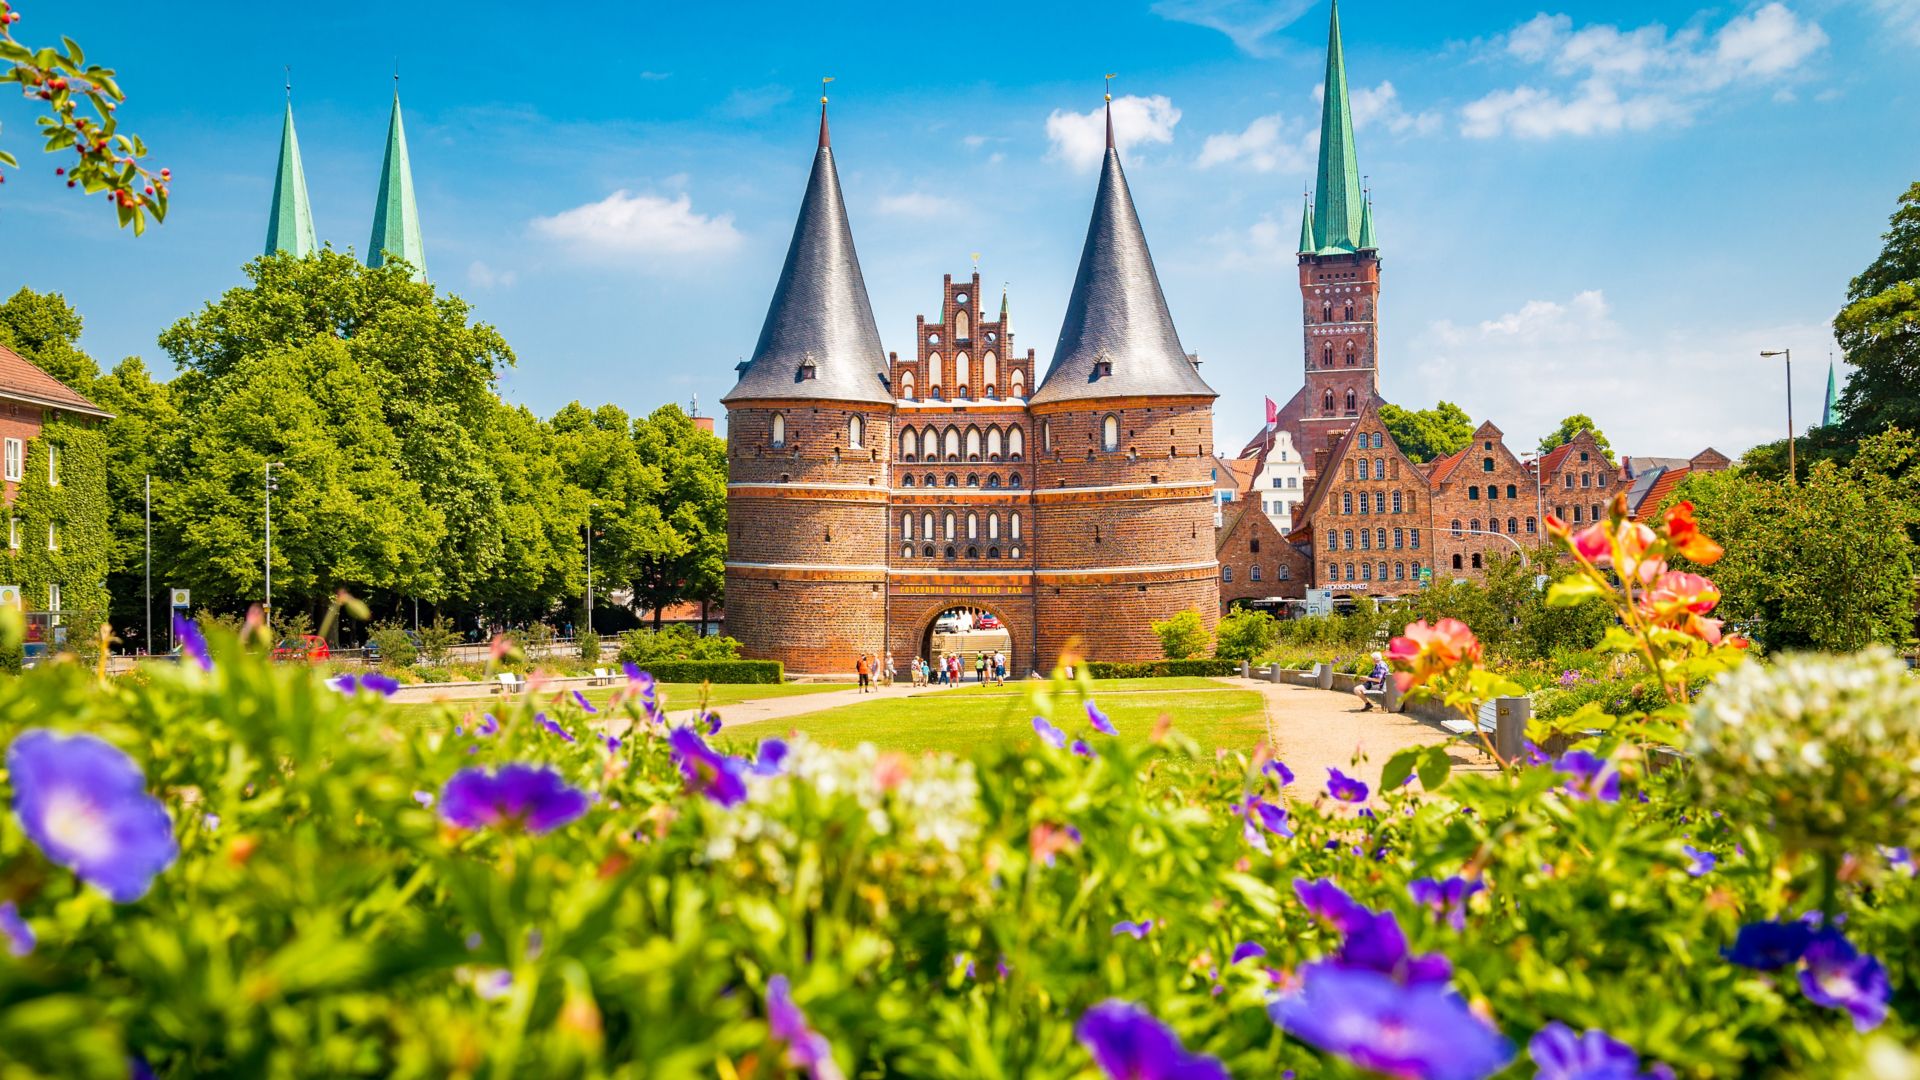 Ciudad histórica de Lubeca, con su famosa puerta de Holstentor, en verano. Schleswig-Holstein, al norte de Alemania